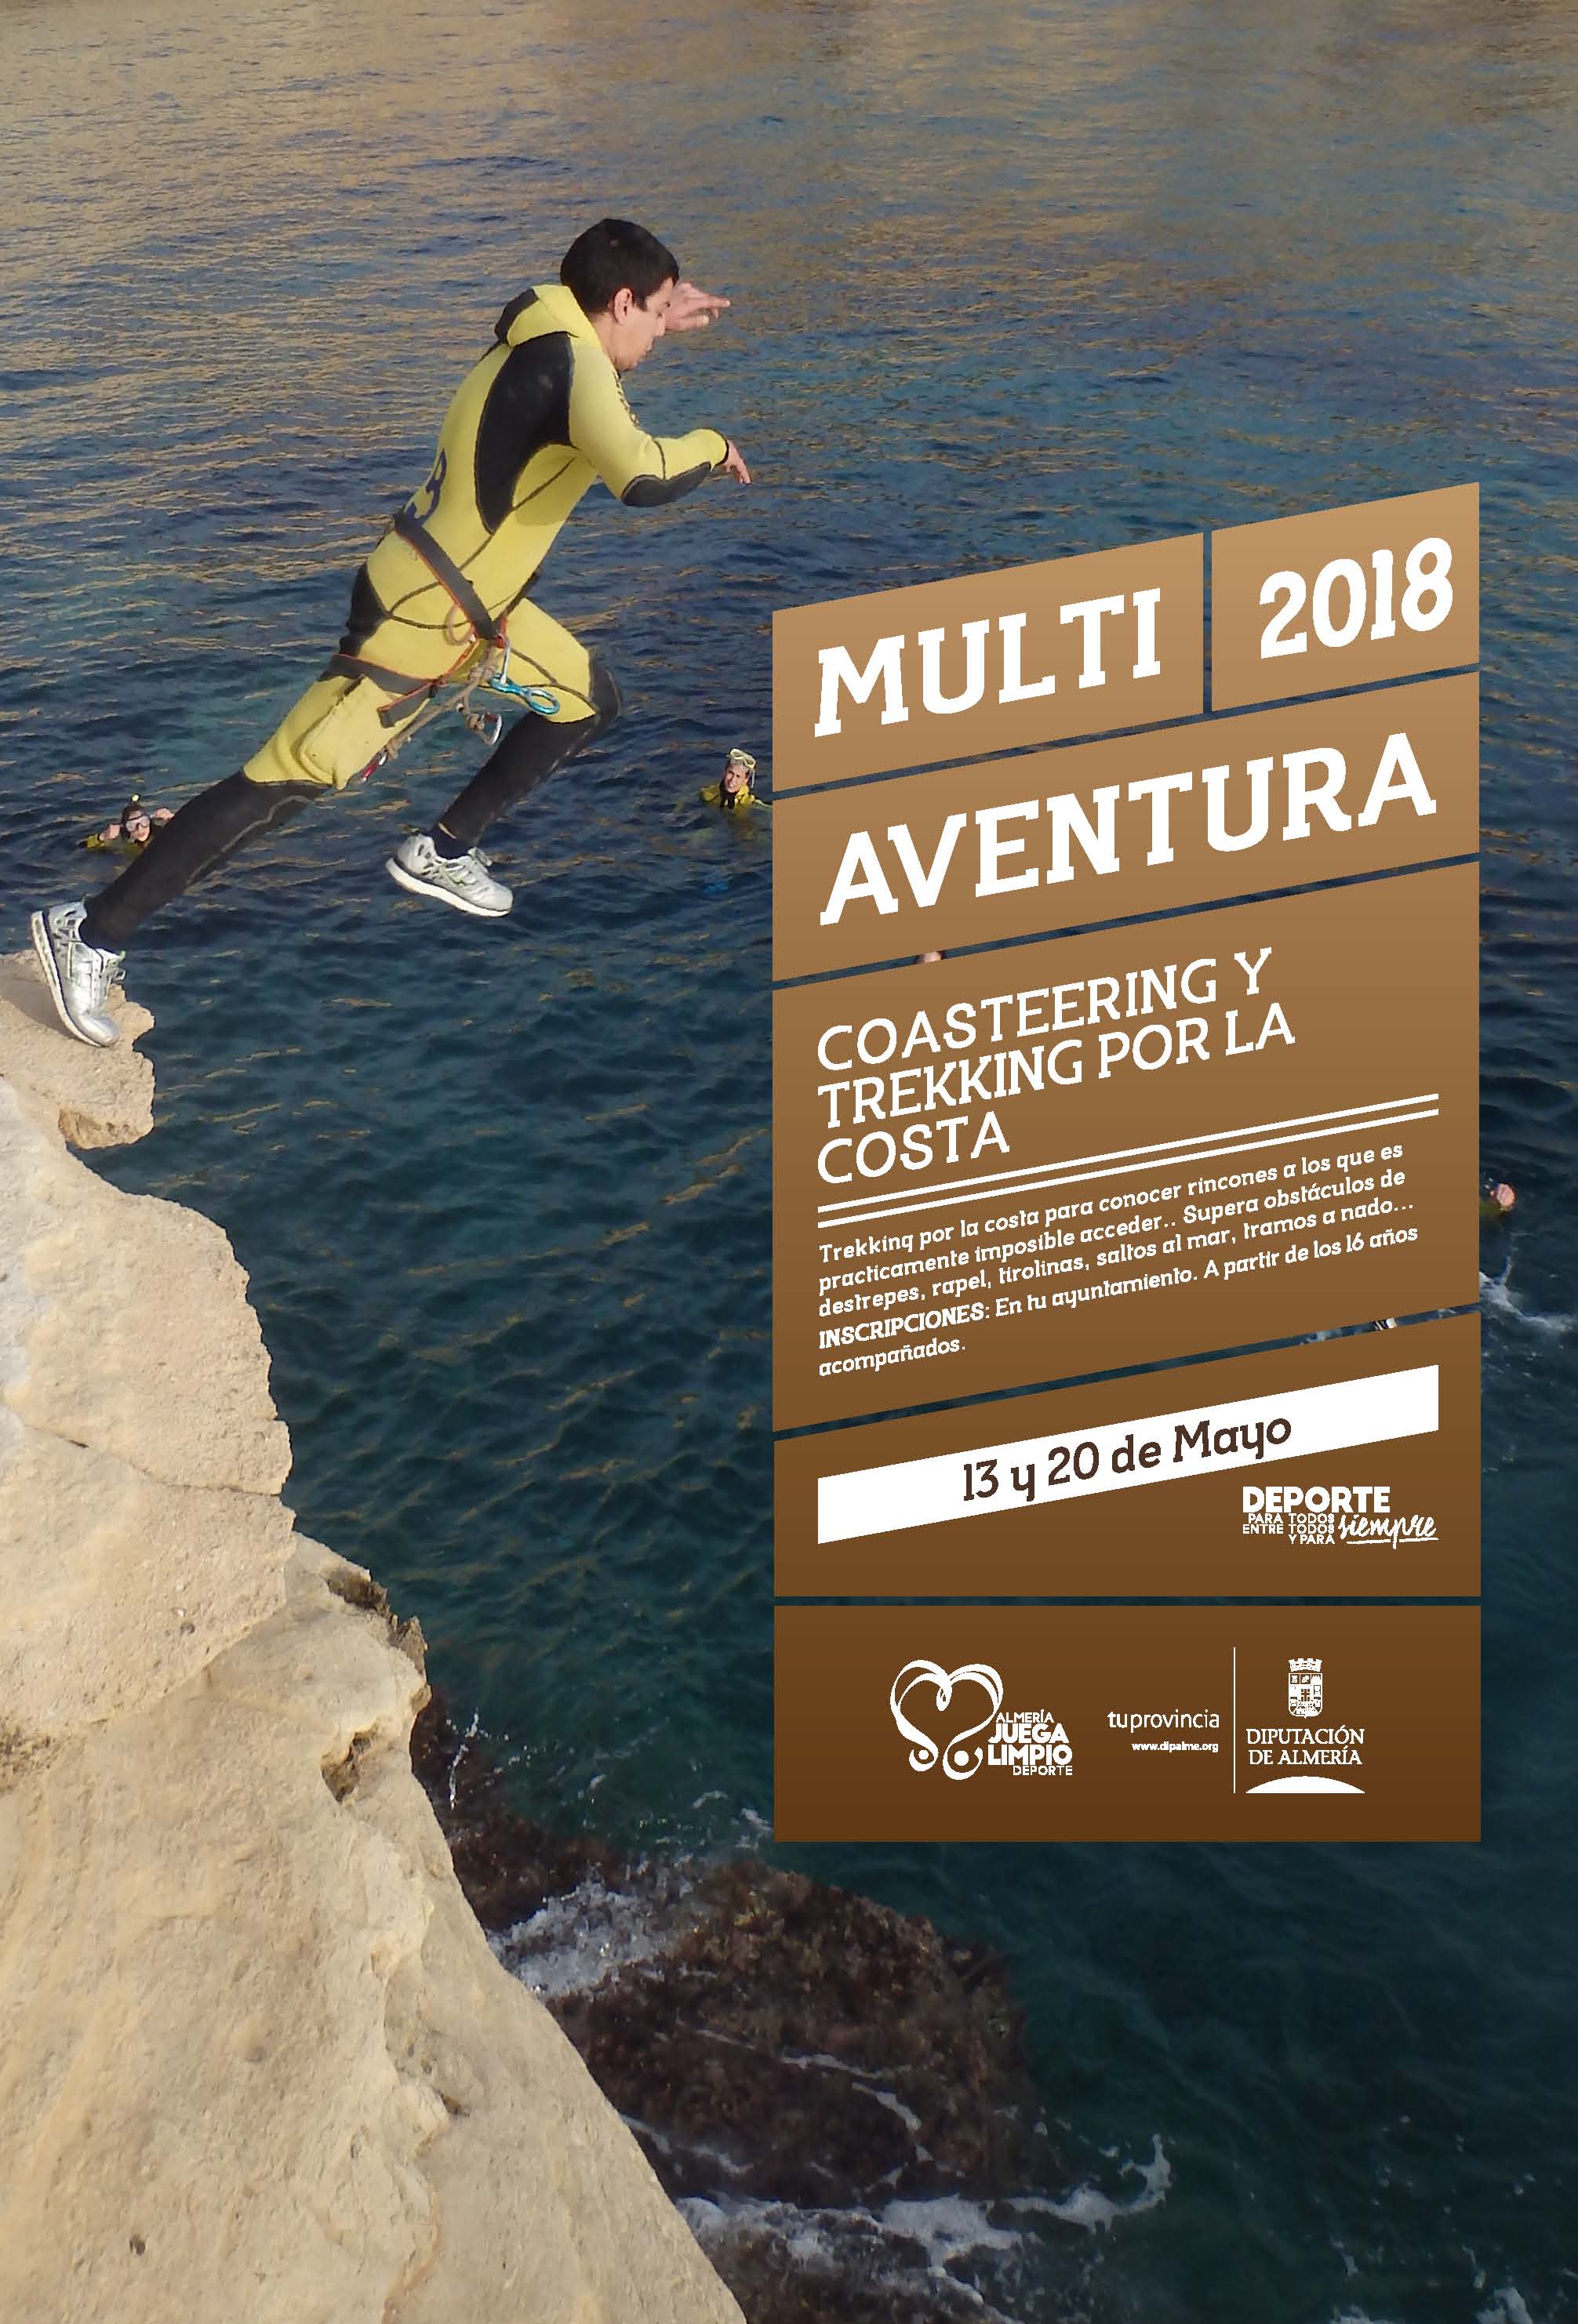 COASTEERING - Multiaventura por las playas y costas de Almería. 13 y 20 Mayo